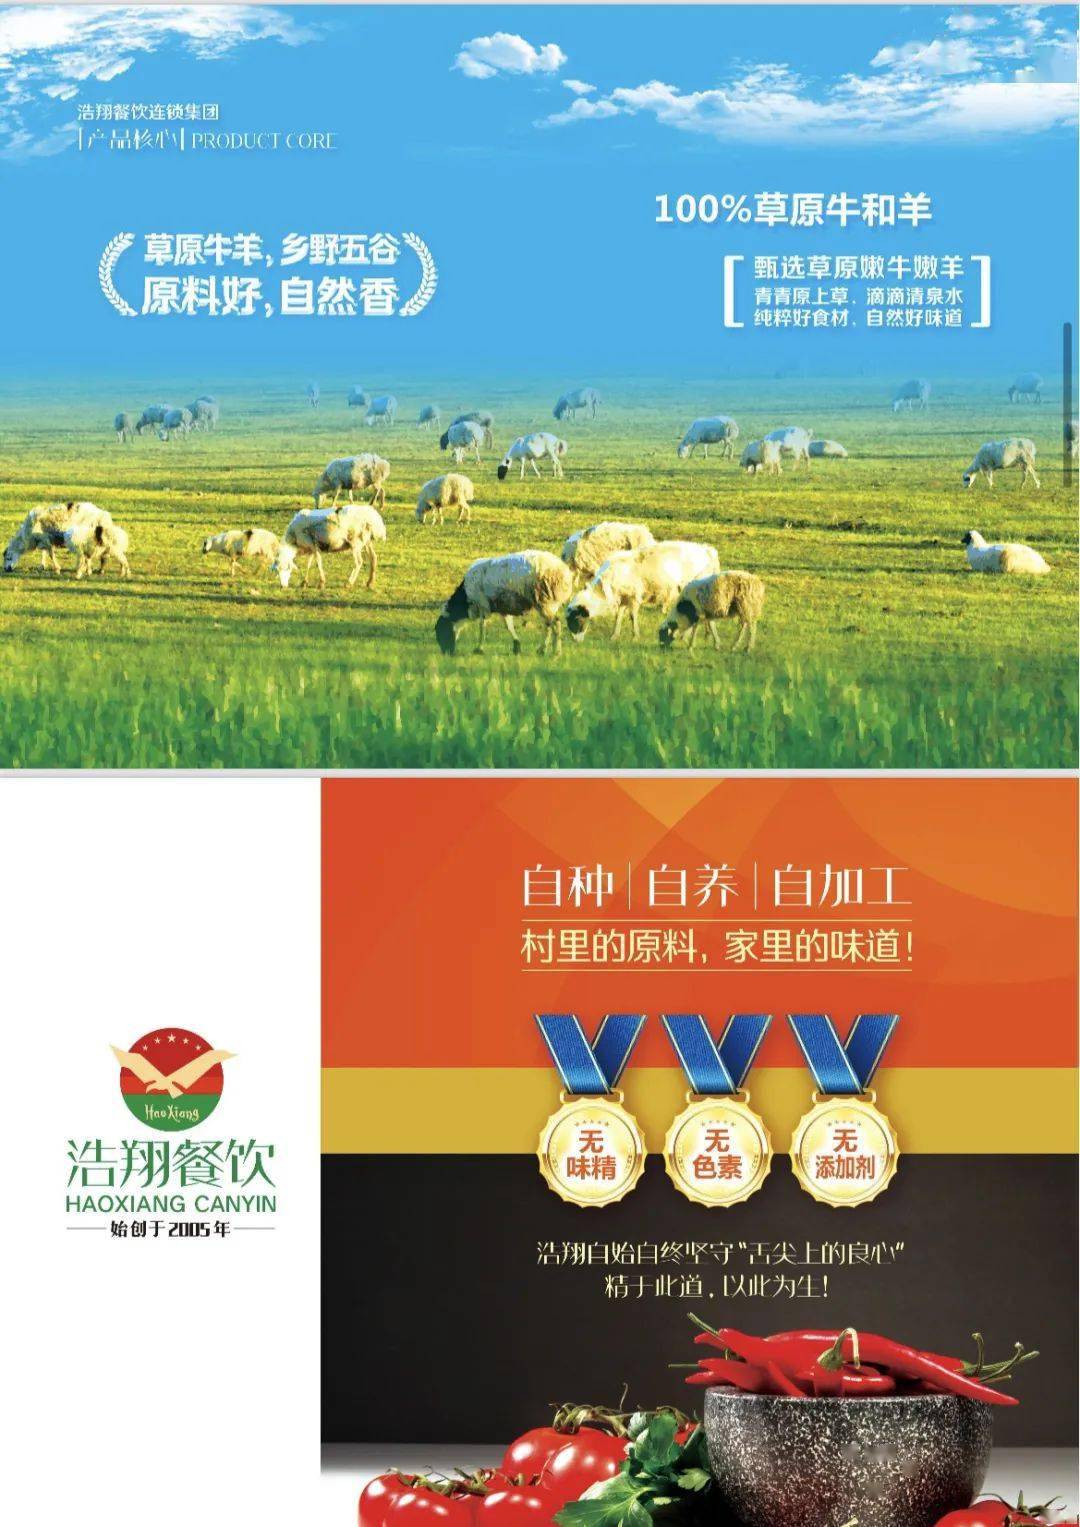 「浩翔餐饮」冠名2023敕勒川草原半程马拉松赛